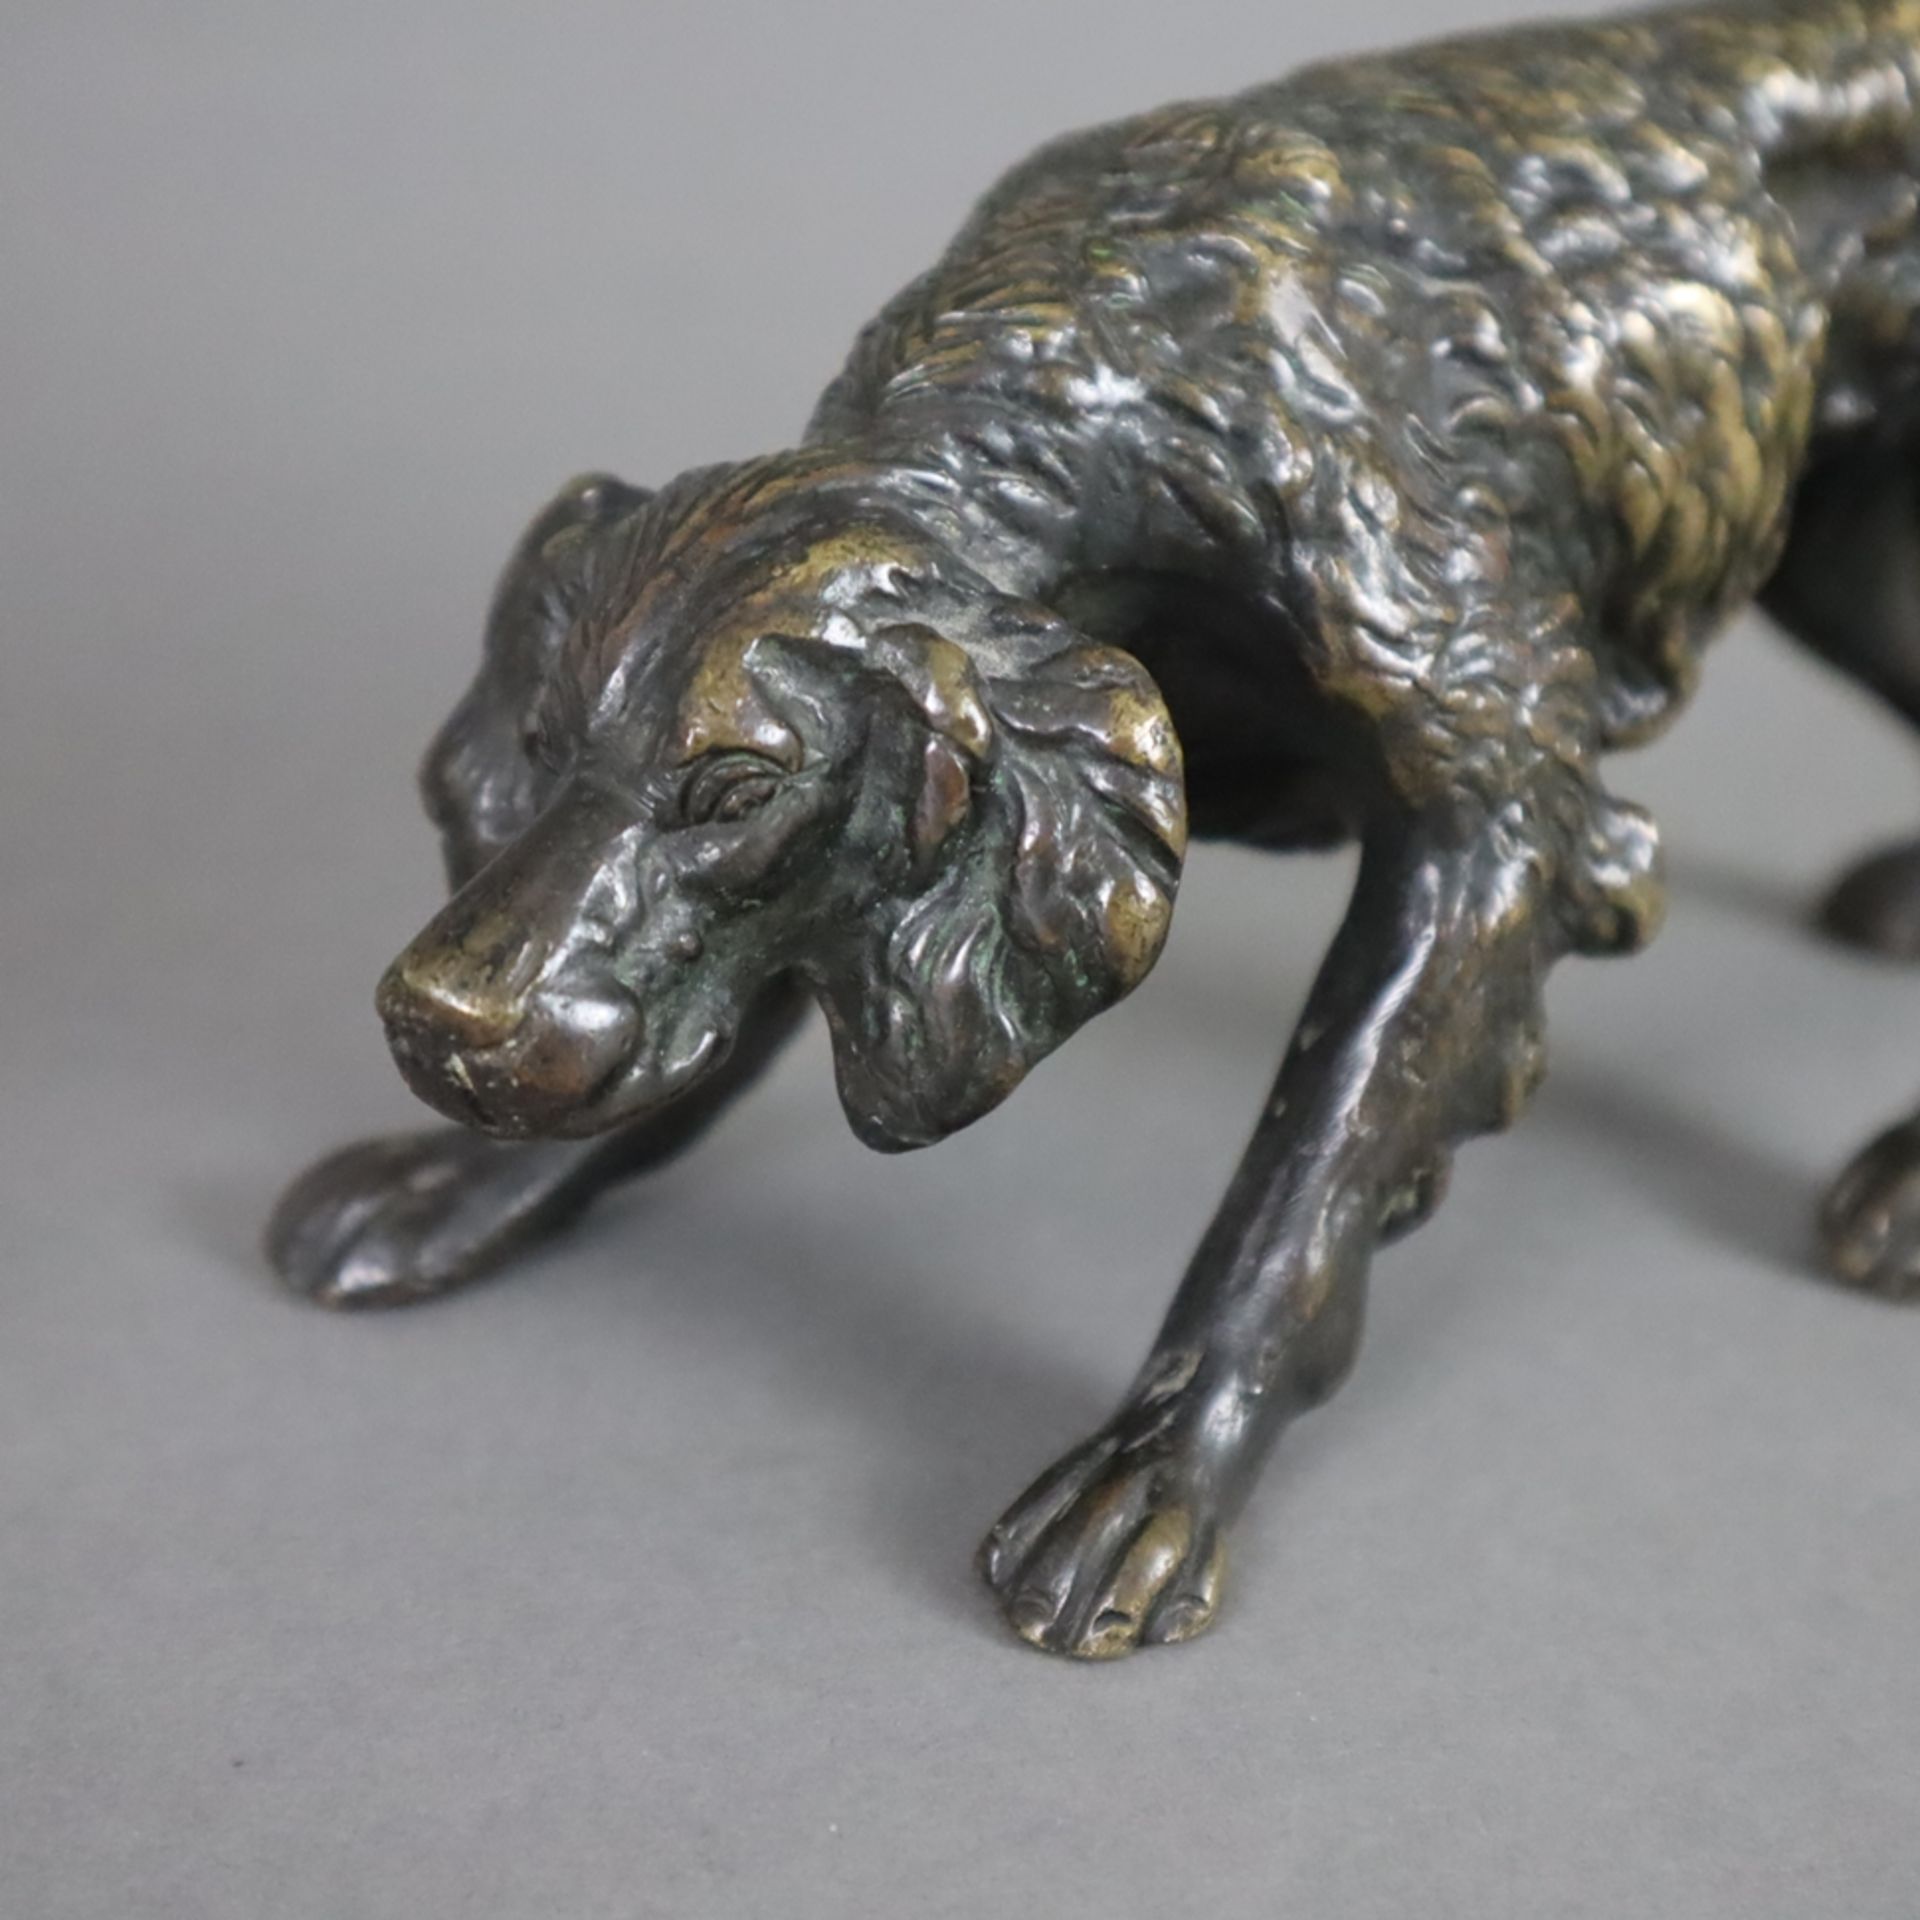 Zwei jagdliche Tierfiguren aus Bronze - Jagdhund & Rotfuchs, vollplastisch gestaltete naturgetreue  - Bild 3 aus 10